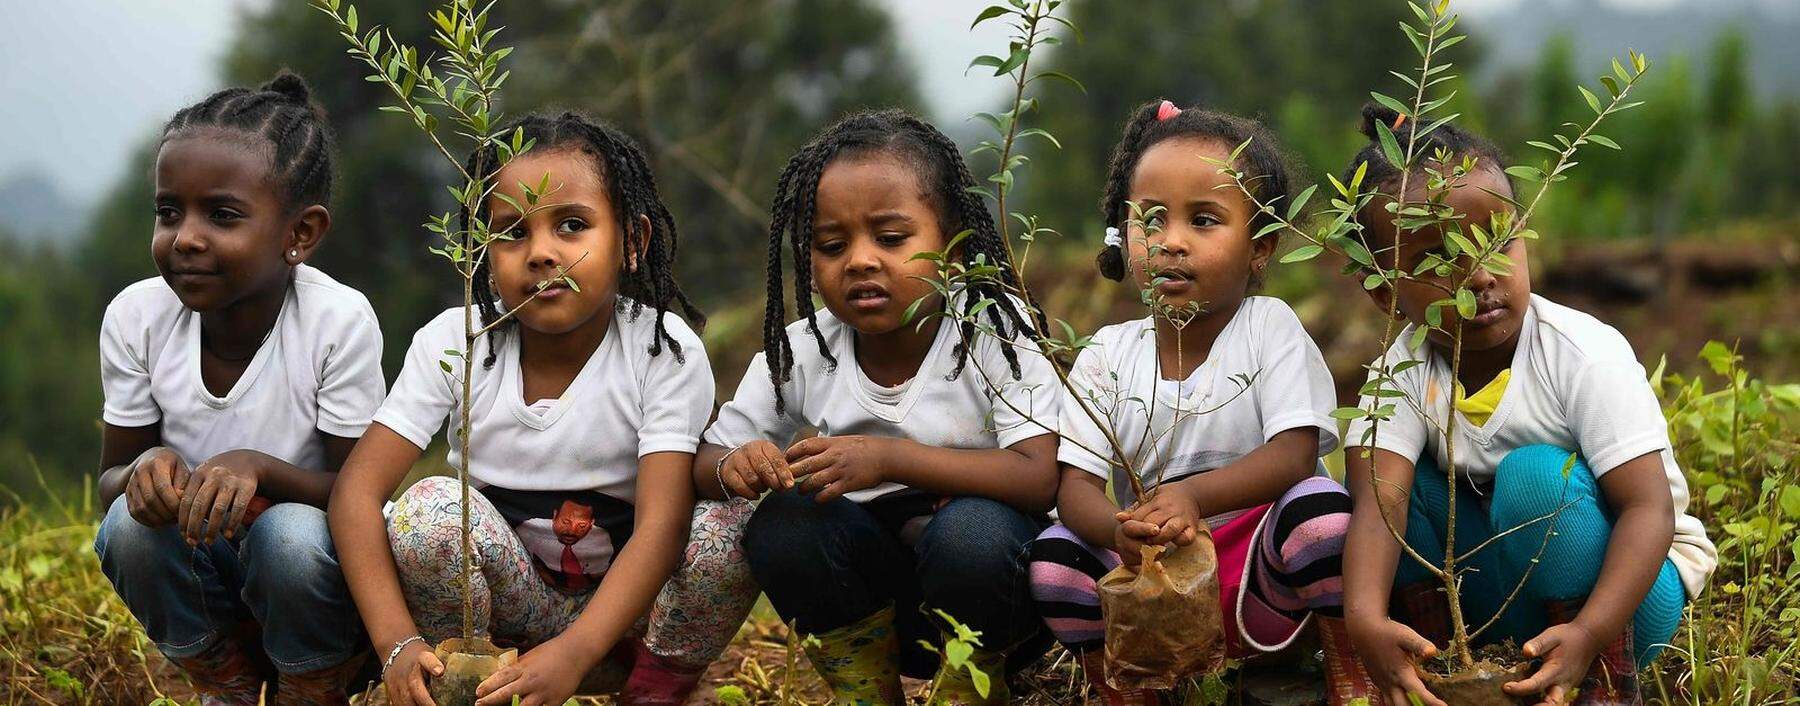 Mädchen in Äthiopien nehmen an der landesweiten Aufforstungsinitiative teil. In diesem Jahr soll jeder der rund 105 Millionen Einwohner 40 Bäume pflanzen.